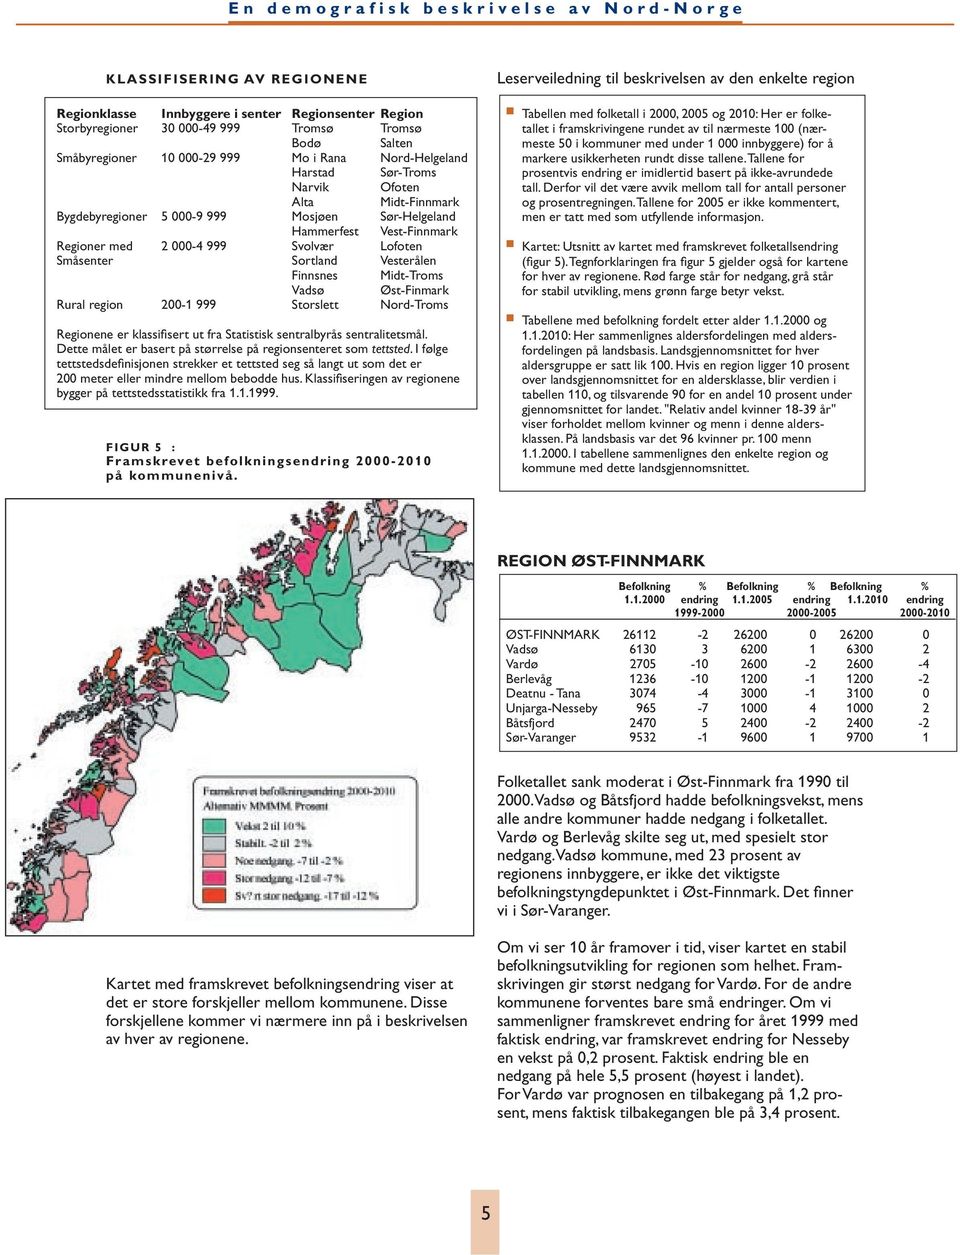 Midt-Troms Vadsø Øst-Finmark Rural region 200-1 999 Storslett Nord-Troms Regionene er klassifisert ut fra Statistisk sentralbyrås sentralitetsmål.